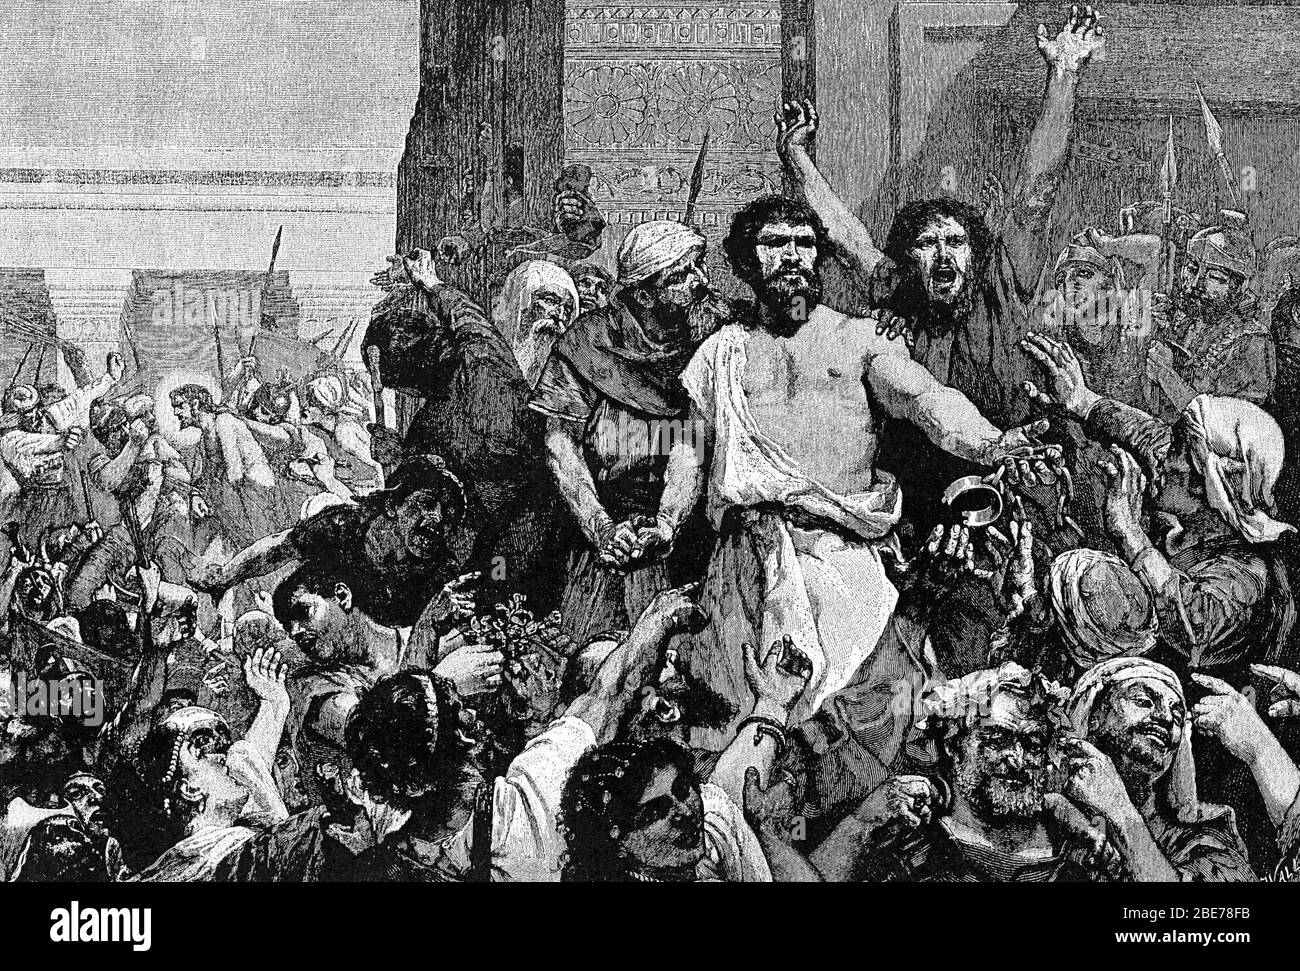 Danos a Barabás - Jerusalén gritando para liberar a Barabás y crucificar a Jesucristo Foto de stock